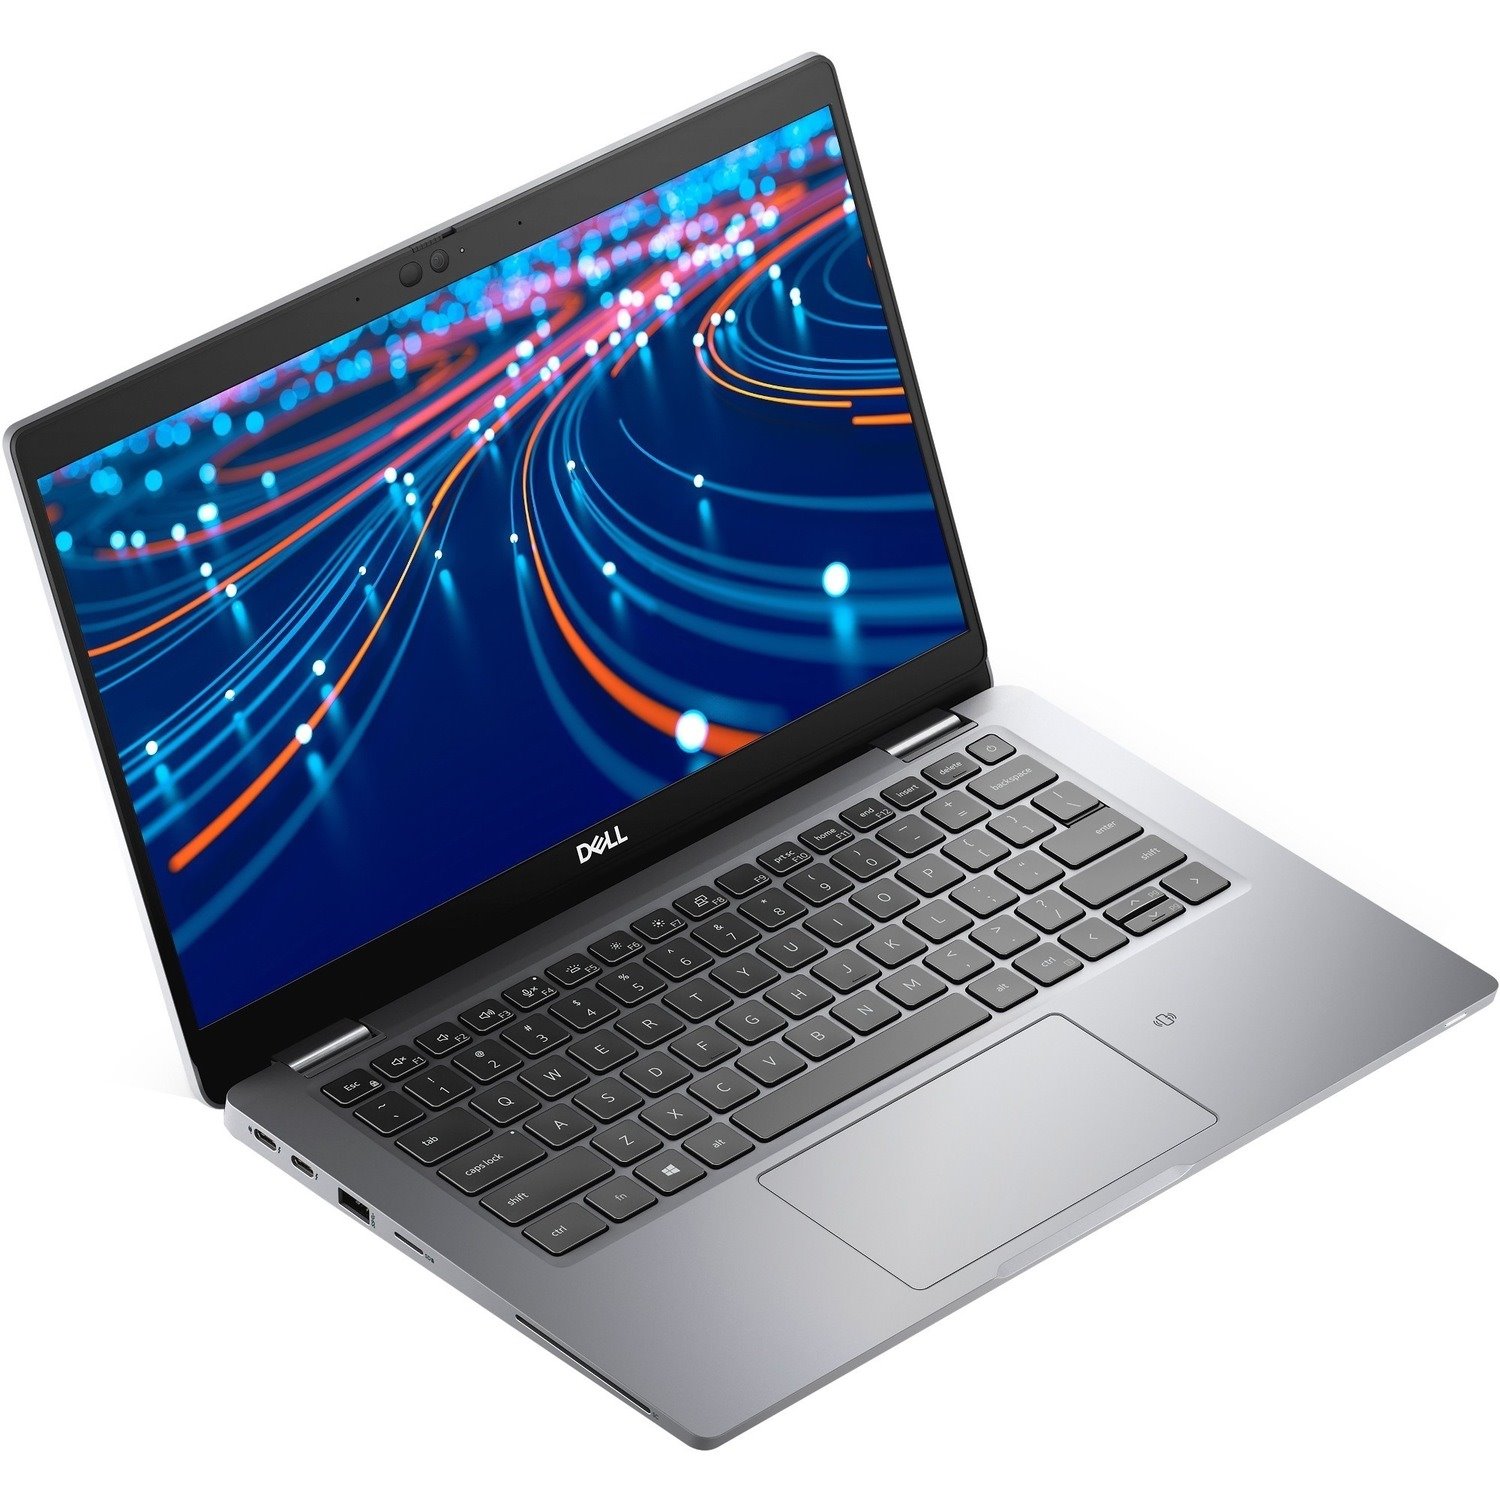 Dell Latitude 5000 5320 33.8 cm (13.3") Notebook - Full HD - 1920 x 1080 - Intel Core i5 11th Gen i5-1135G7 Quad-core (4 Core) 2.40 GHz - 8 GB Total RAM - 256 GB SSD - Titan Gray